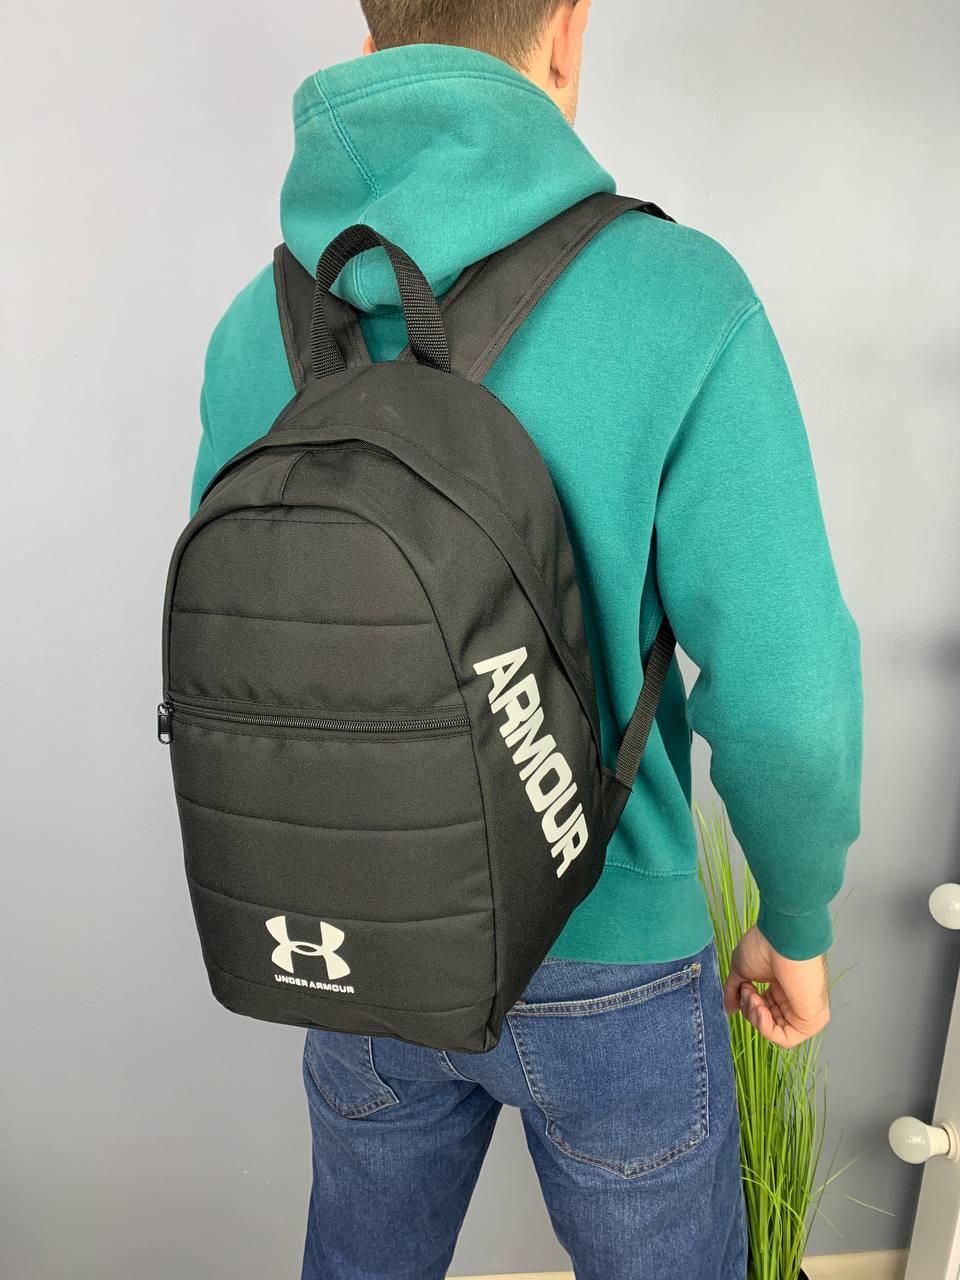 Невеликий чоловічий міський рюкзак, містка сумка з міцної тканини для міста, тренувань і подорожей